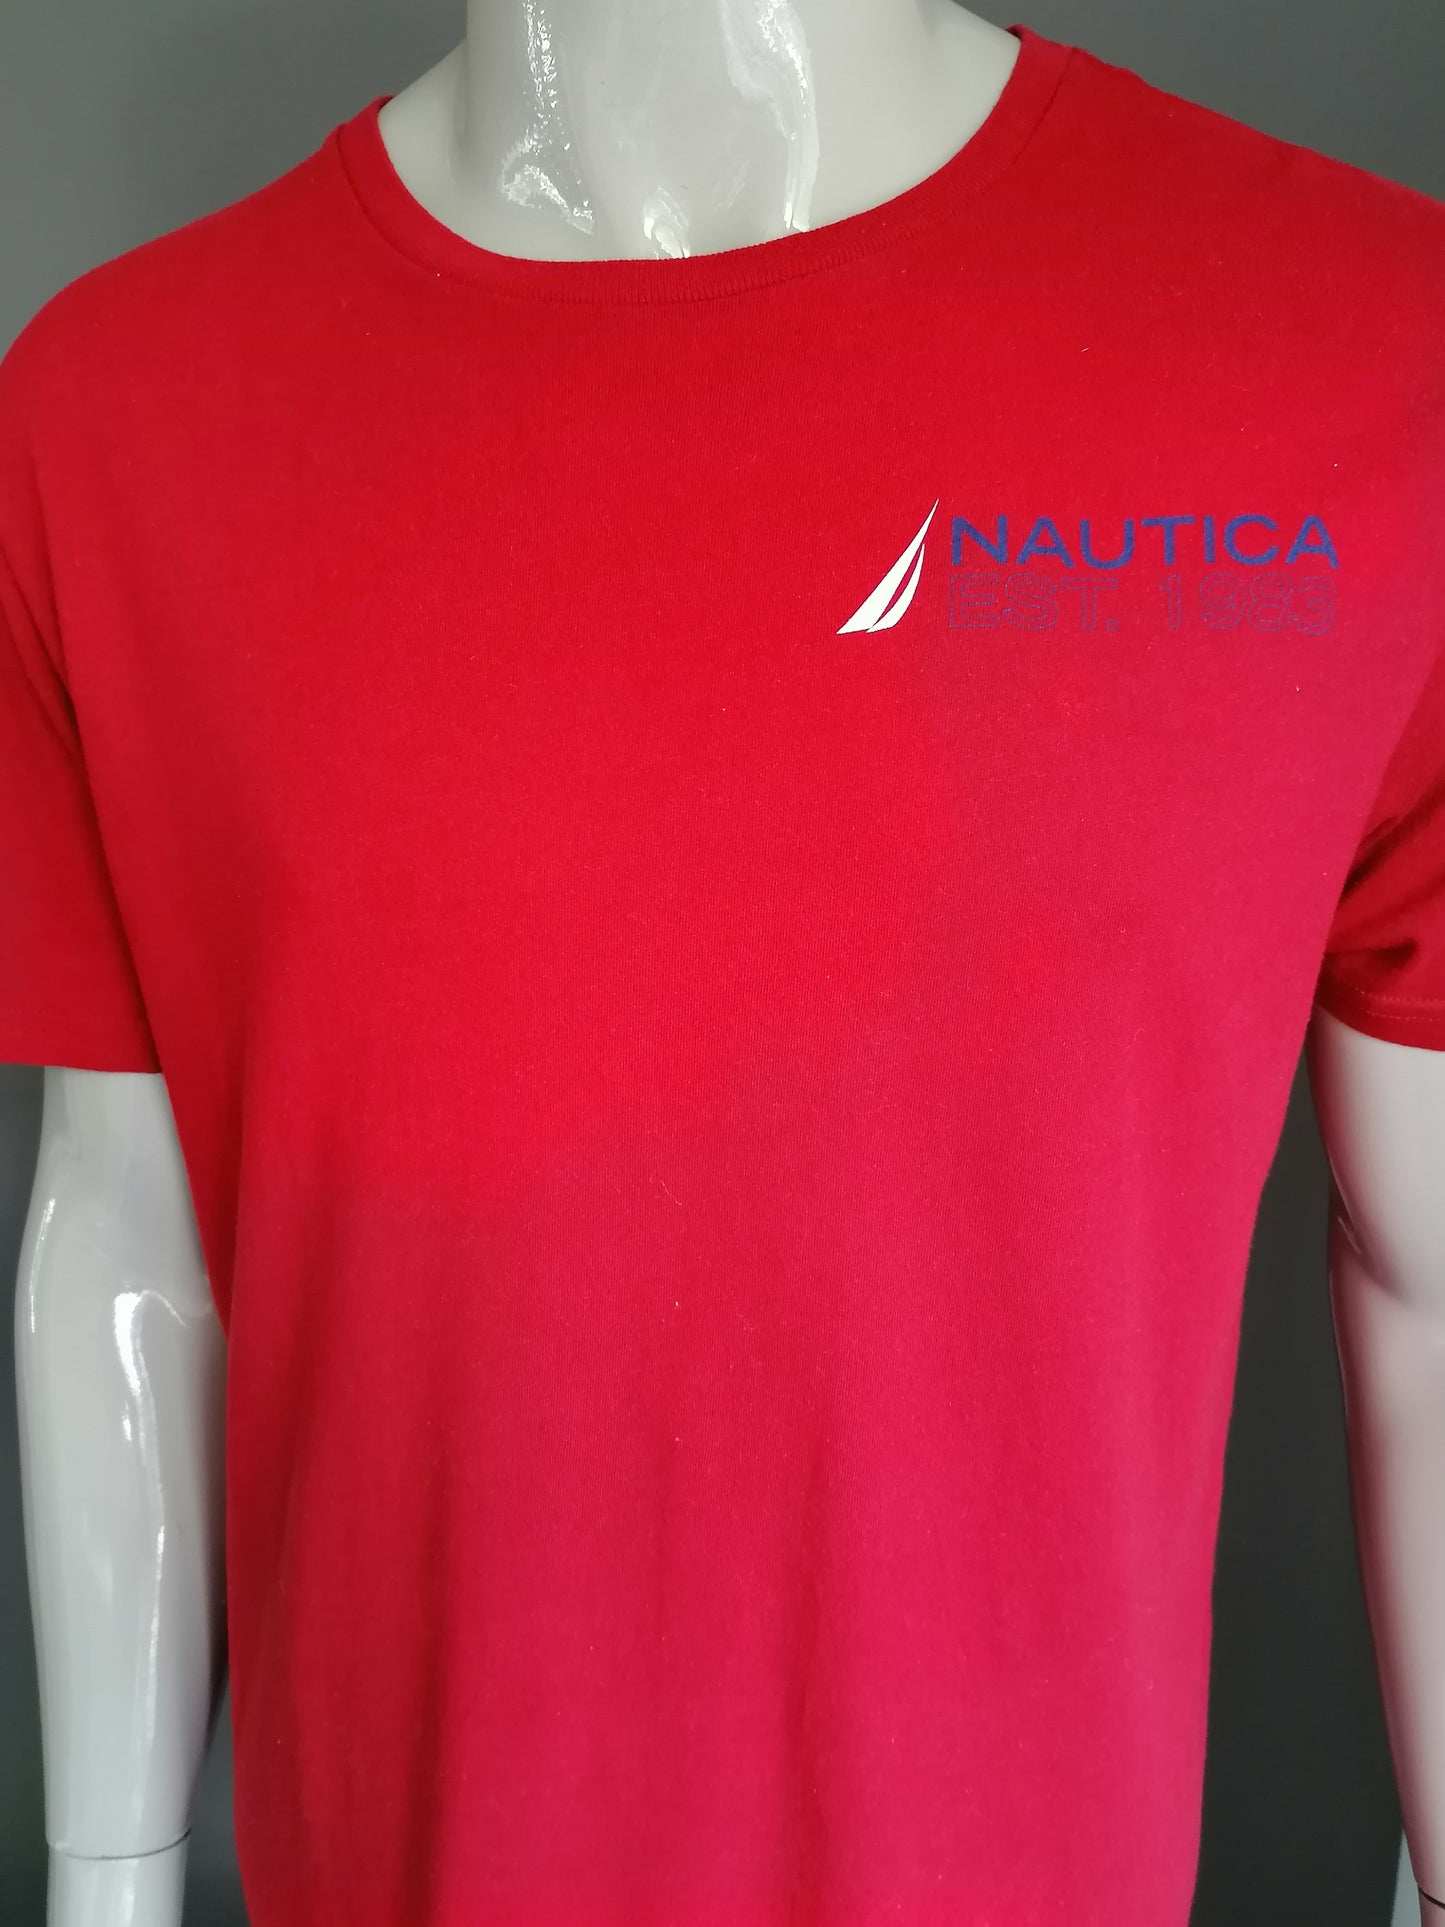 Camisa de Nautica. Rojo con impresión. Talla L.